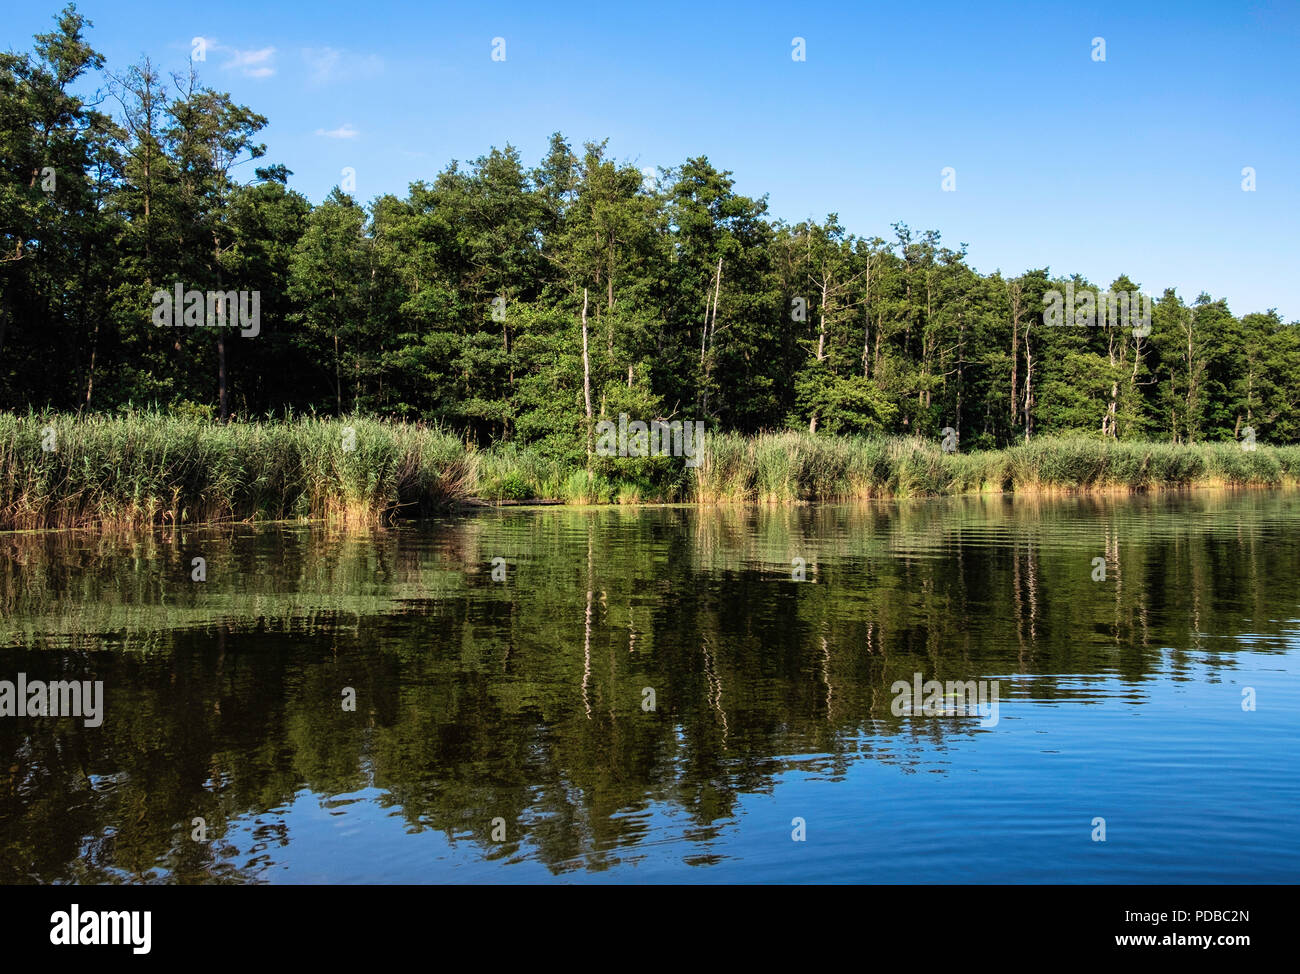 Germania, fiume Peene - Peenetal Nature Conservation Park. Le zone umide con canne e alberi sulla riva del fiume e di riflessioni su acqua tranquilla Foto Stock